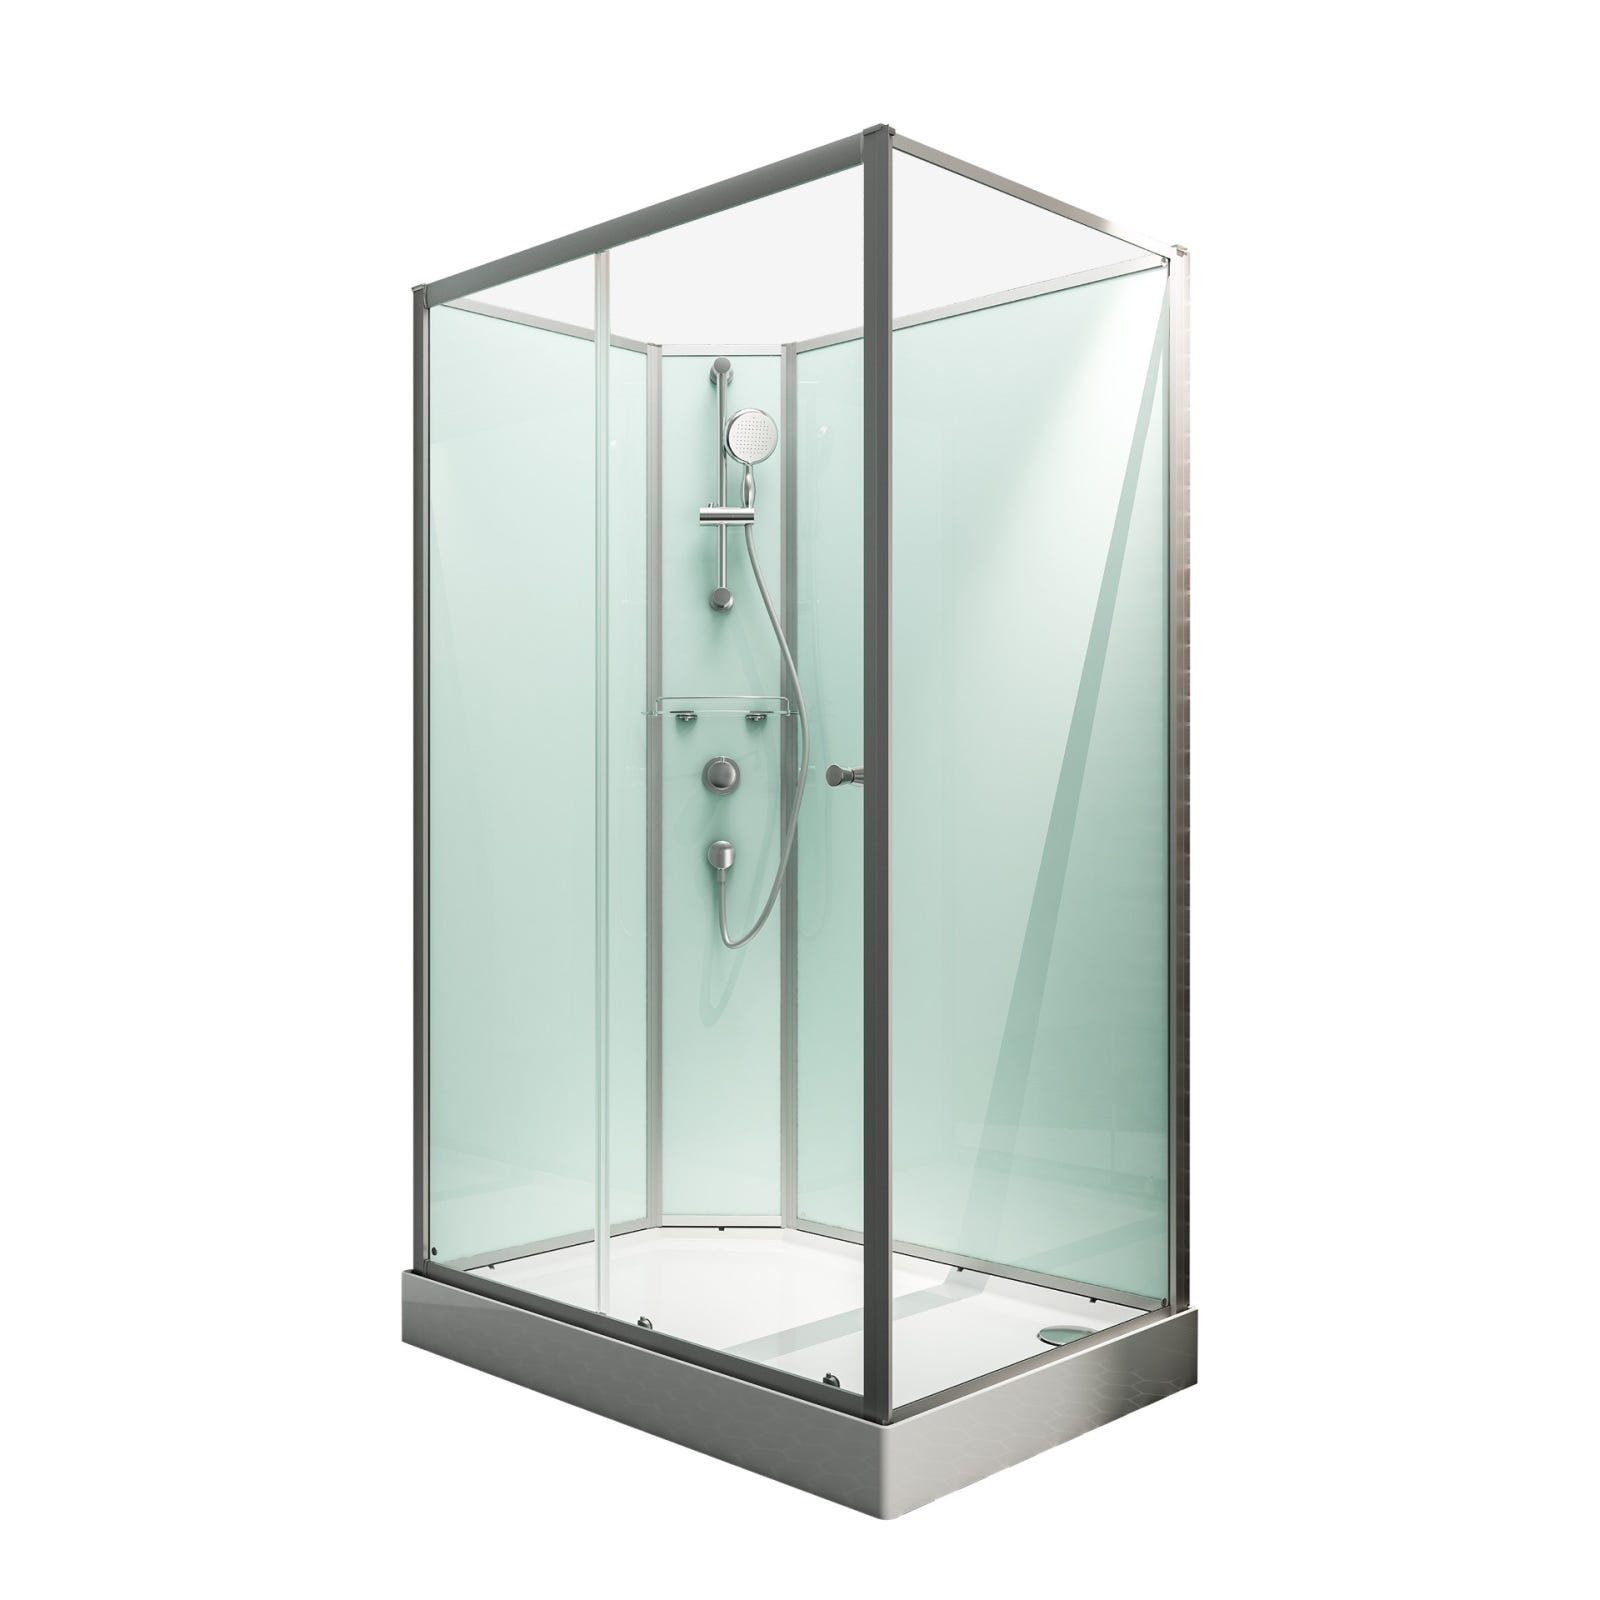 Schulte cabine de douche intégrale complète avec porte coulissante, 160 x 90 cm, verre 5 mm, paroi latérale à droite, ouverture vers la gauche, Ibiza 1